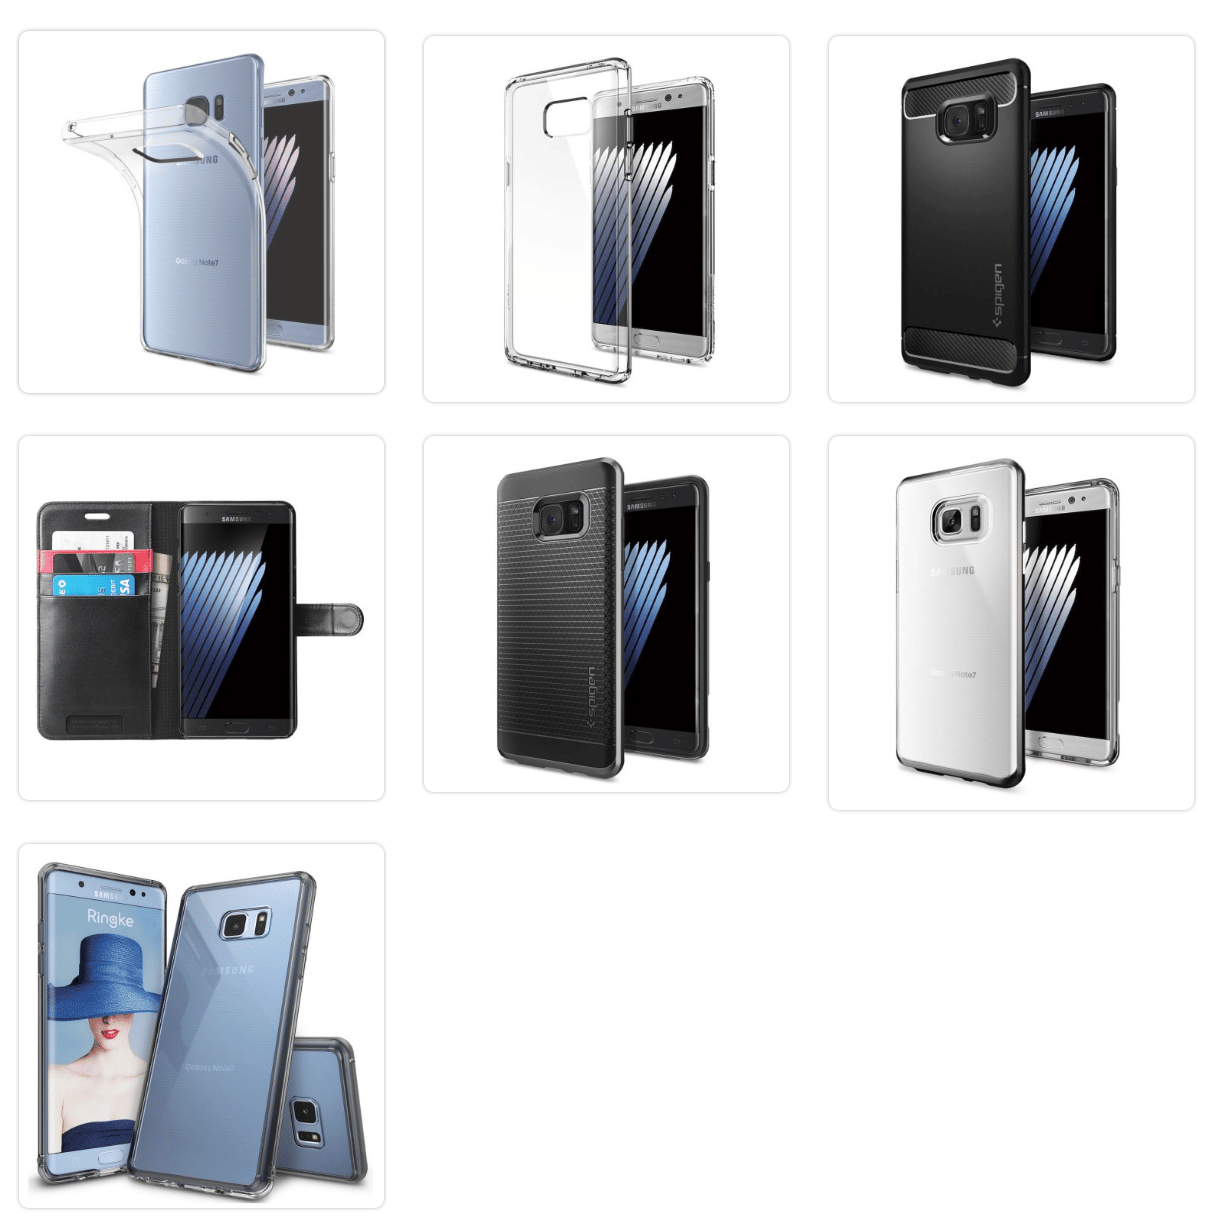 , Voici les accessoires officiels du Samsung Galaxy Note 7